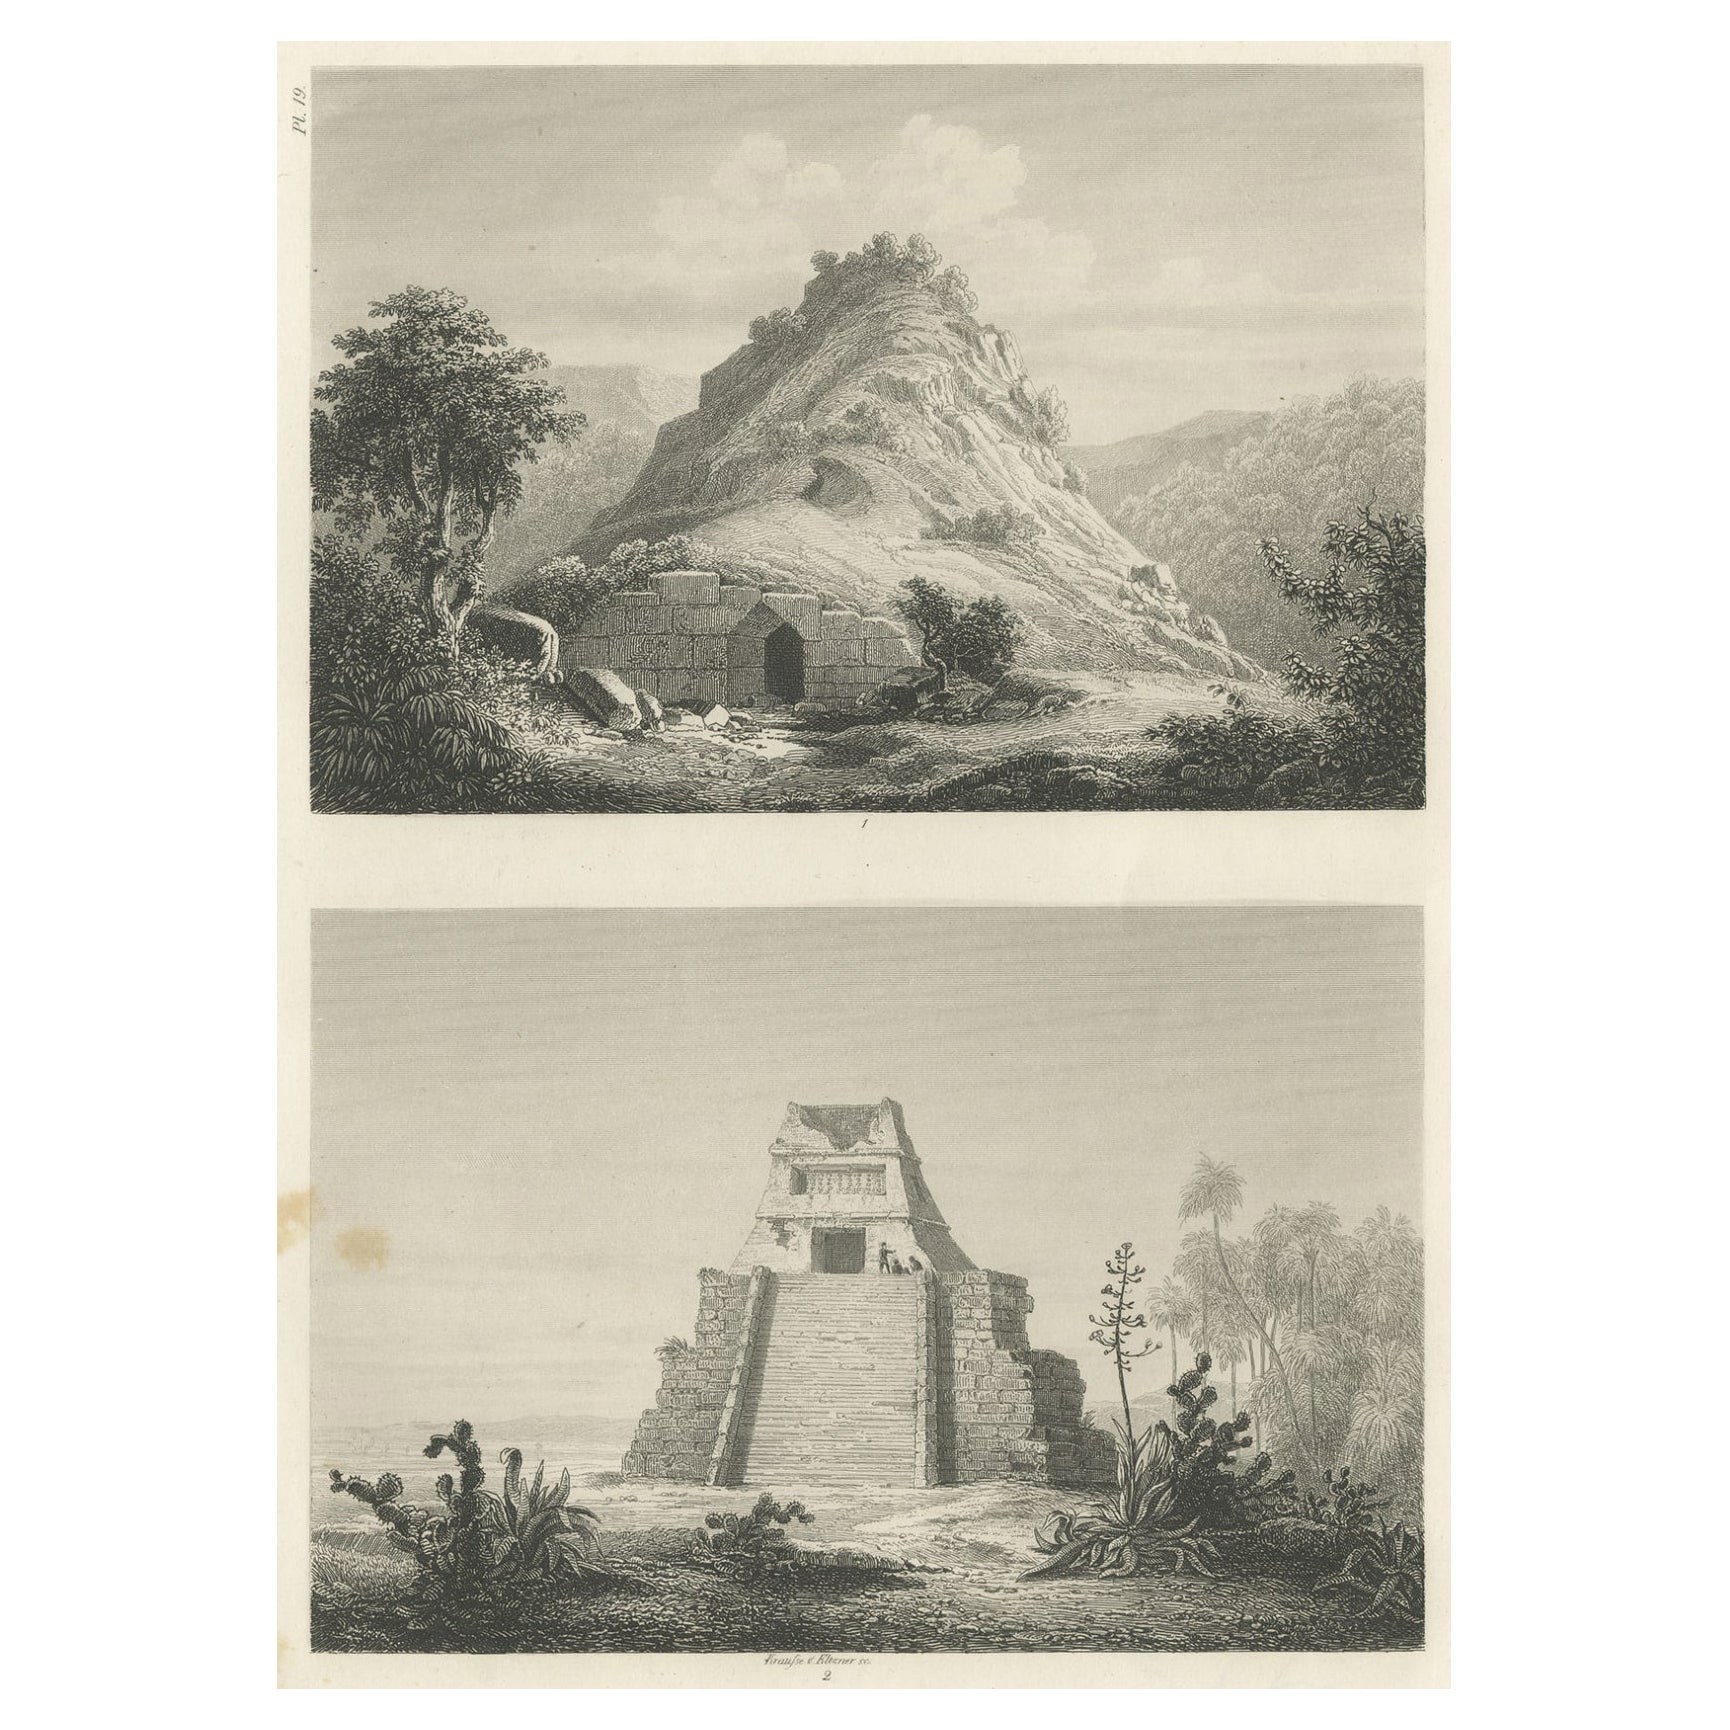 Originaler seltener antiker Druck zweier Ruinen in Mexiko, 1857